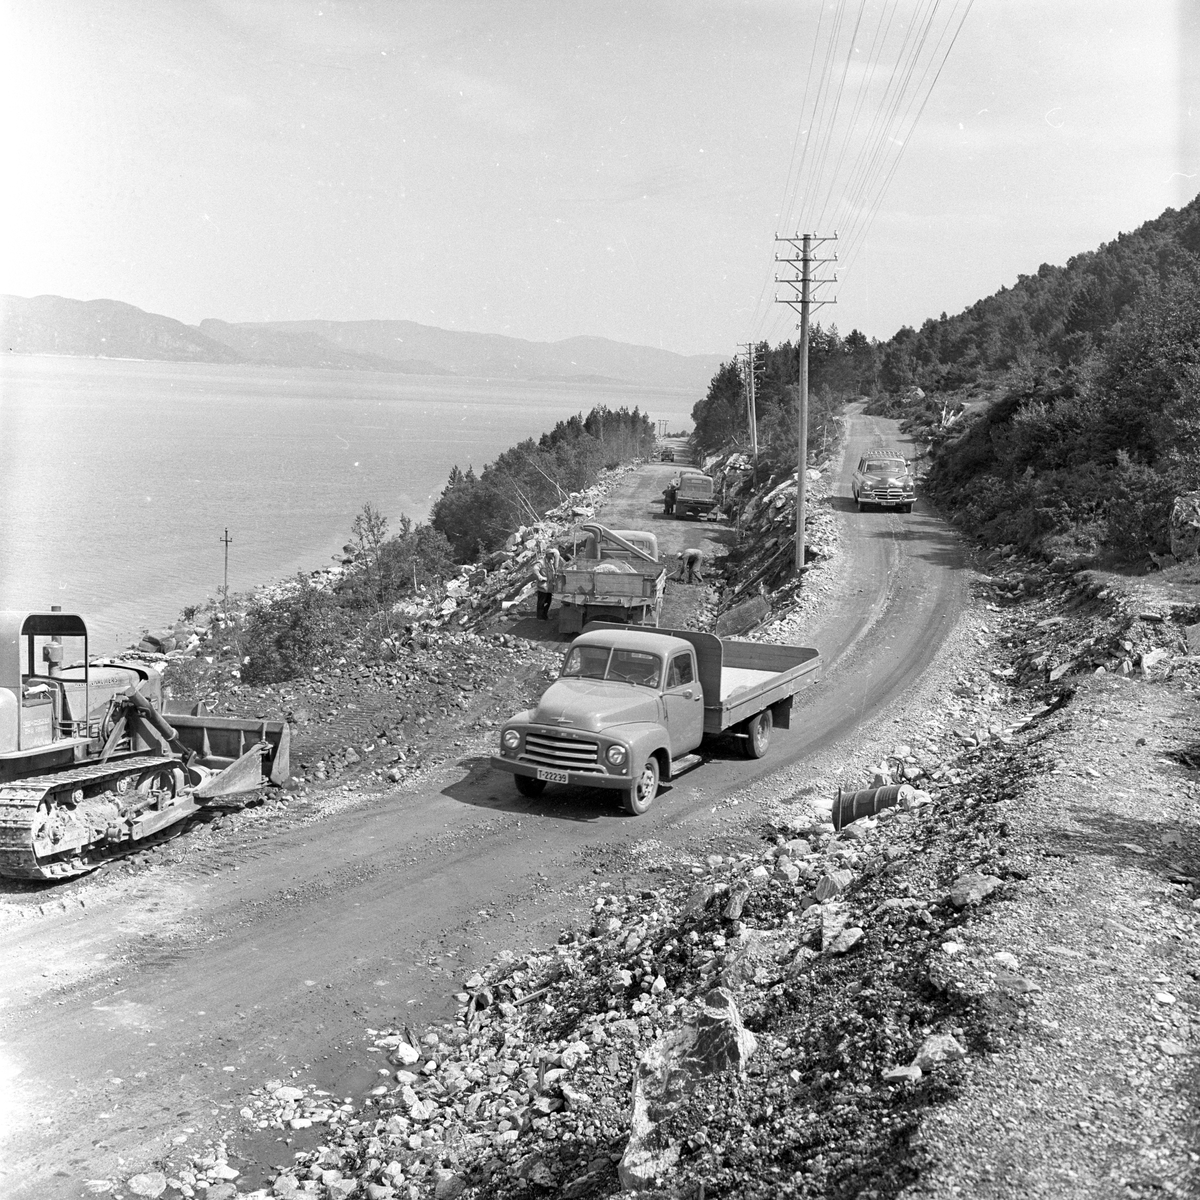 Veibygging på Ålesundveien. Lastebil nærmest er Opel Blitz. Denne modellen ble produsert 1952-60.
Fotografert 1958.